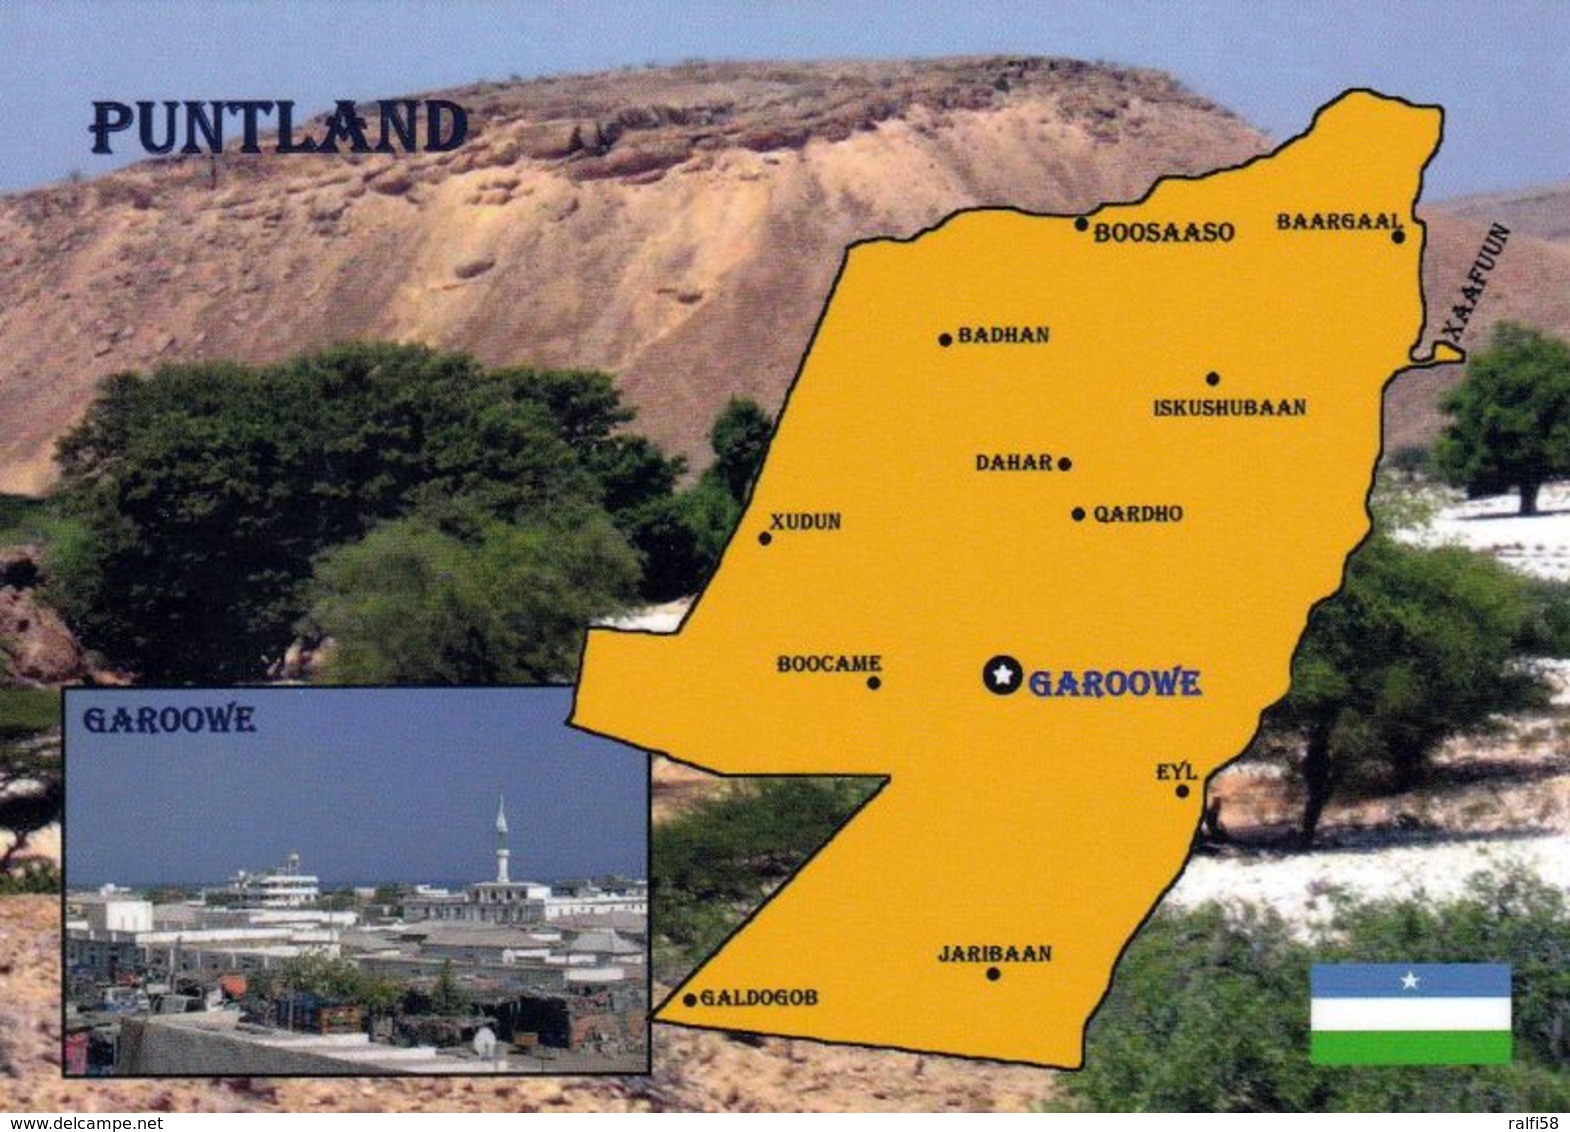 1 Map Of Puntland * 1 Landkarte Von Puntland (autonomes Gebiet In Somalia) Im Kleinen Bild Die Hauptstadt Garoowe * - Landkarten